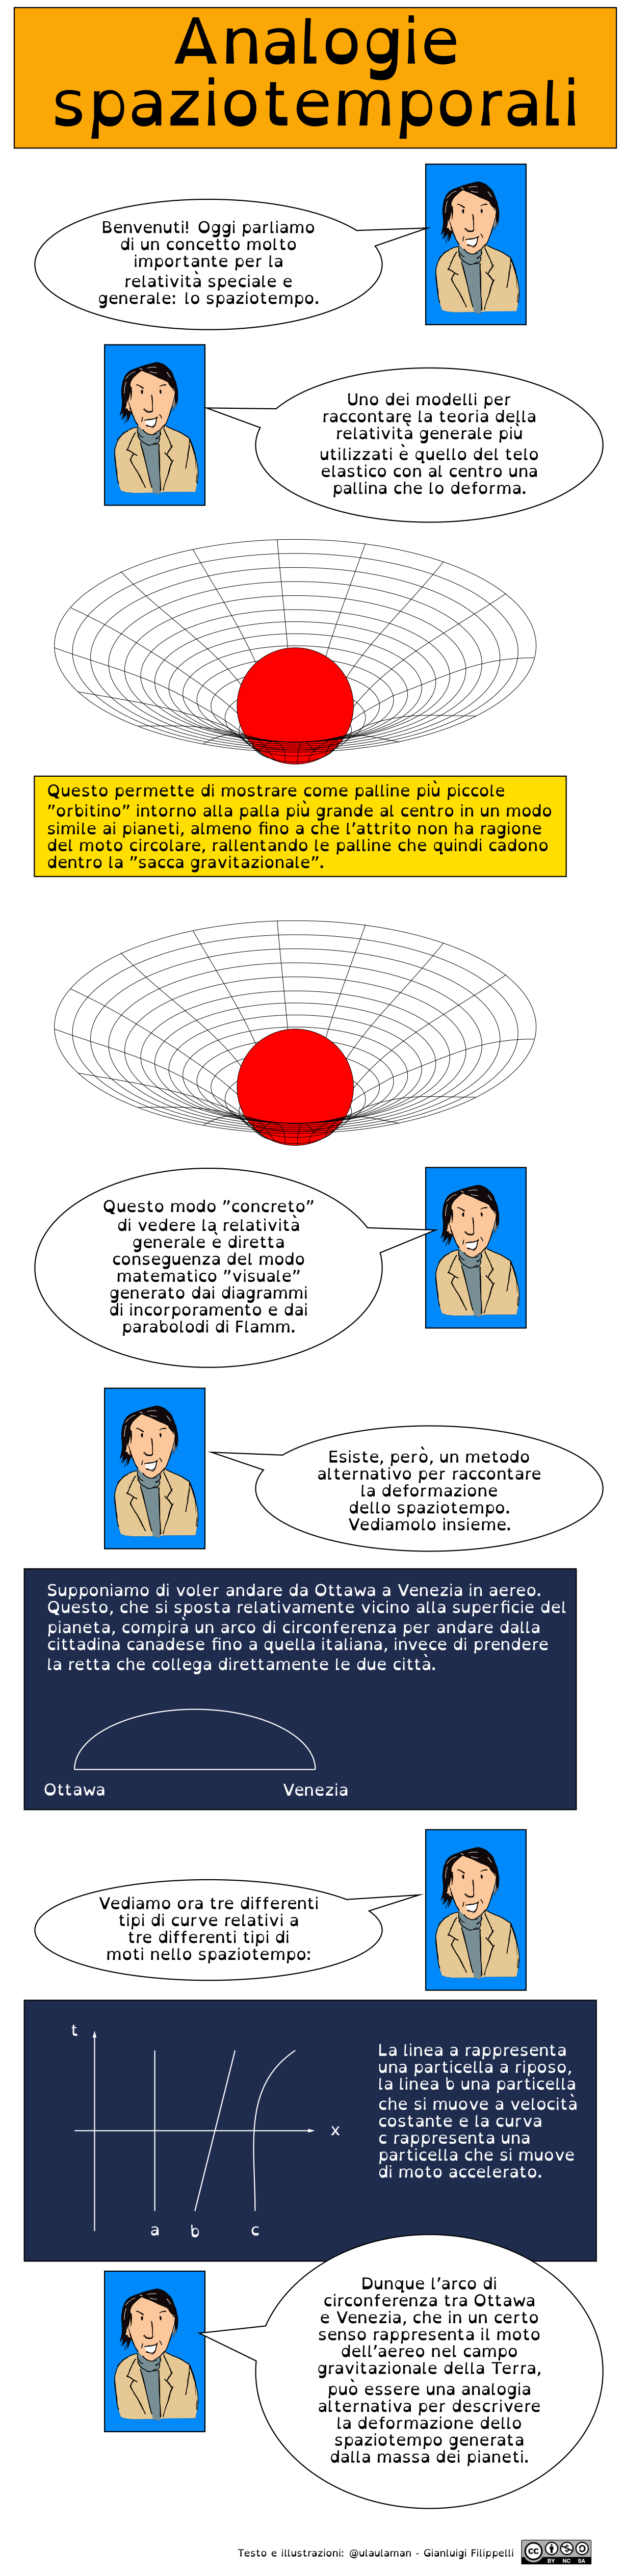 Infografica dedicata a due analogie per descrivere lo spaziotempo e le sue deformazioni